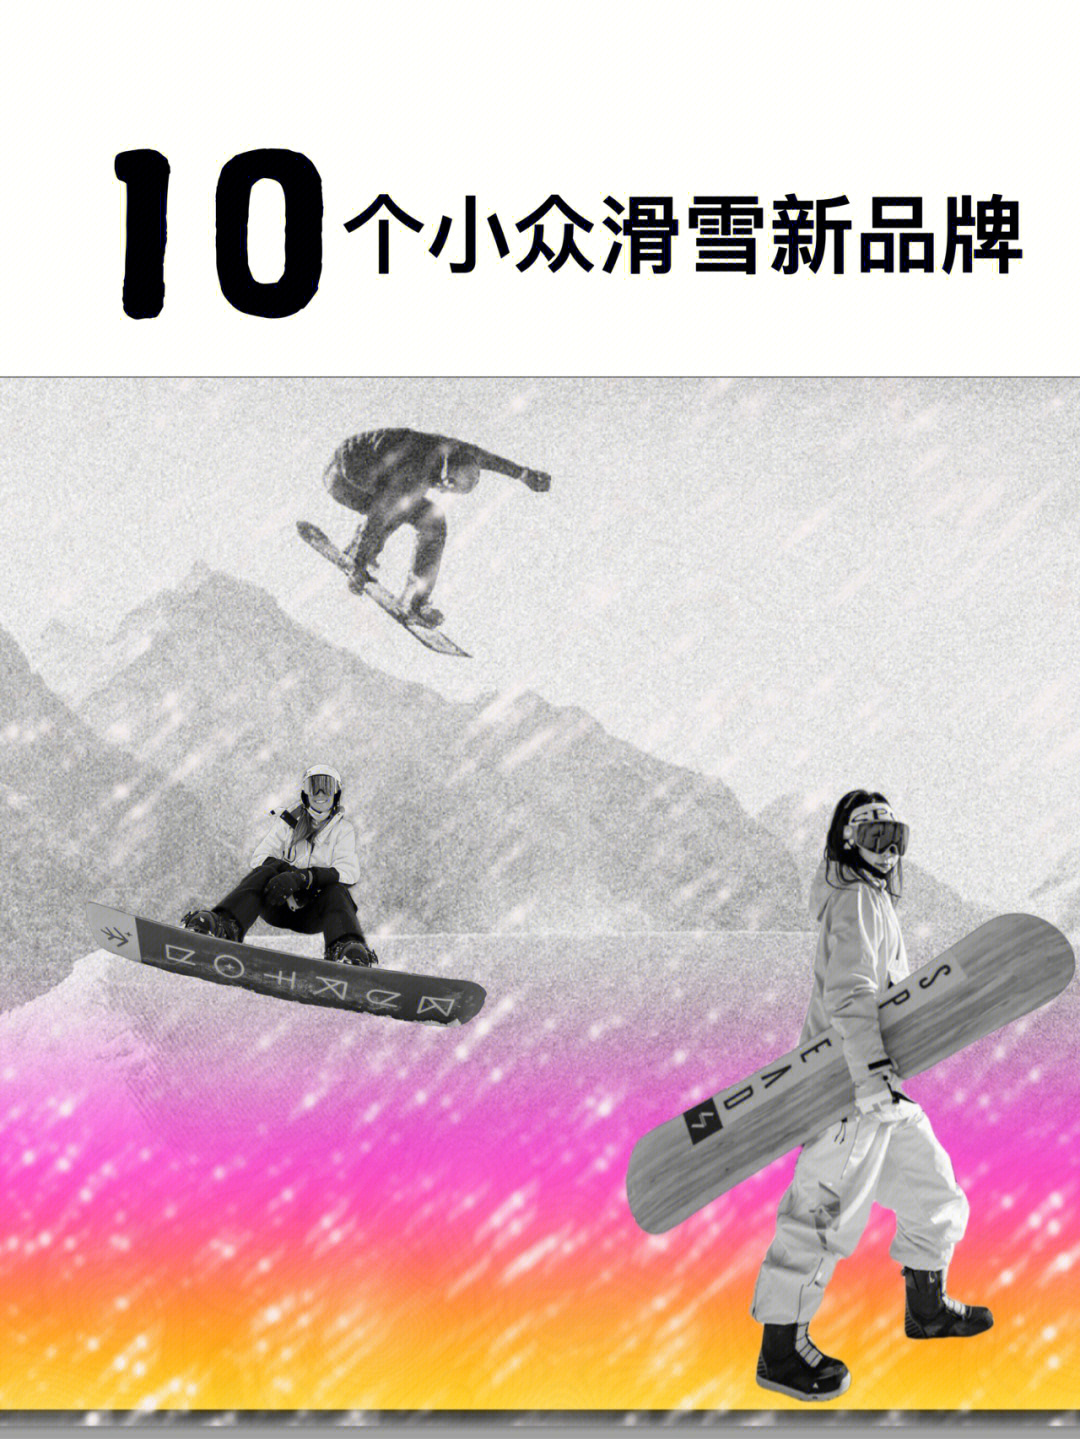 香港滑雪场图片